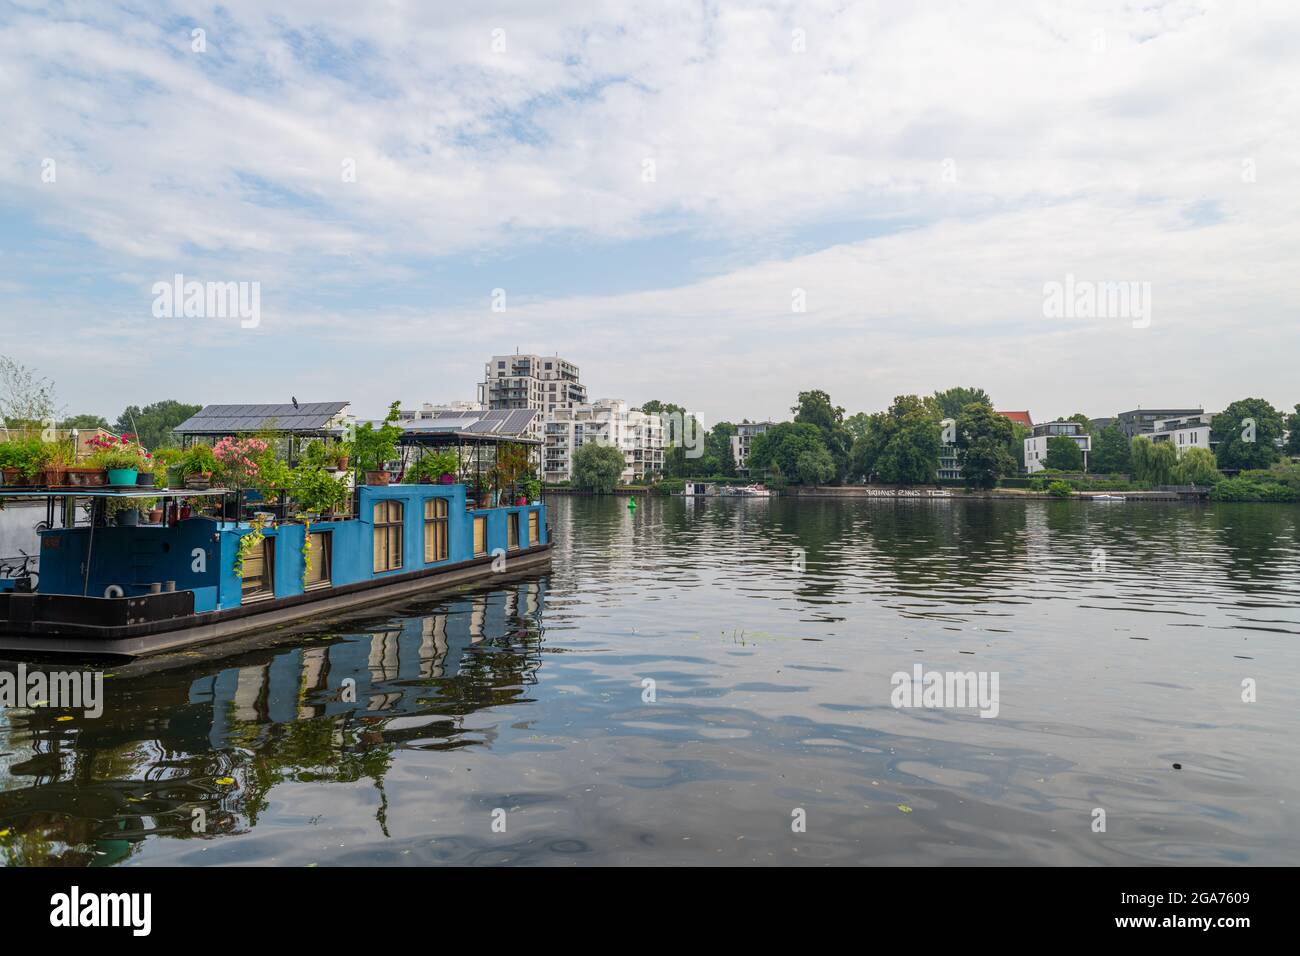 07/25/2021 Berlín, Alemania: Fotos del Parque Treptower en Belin Foto de stock